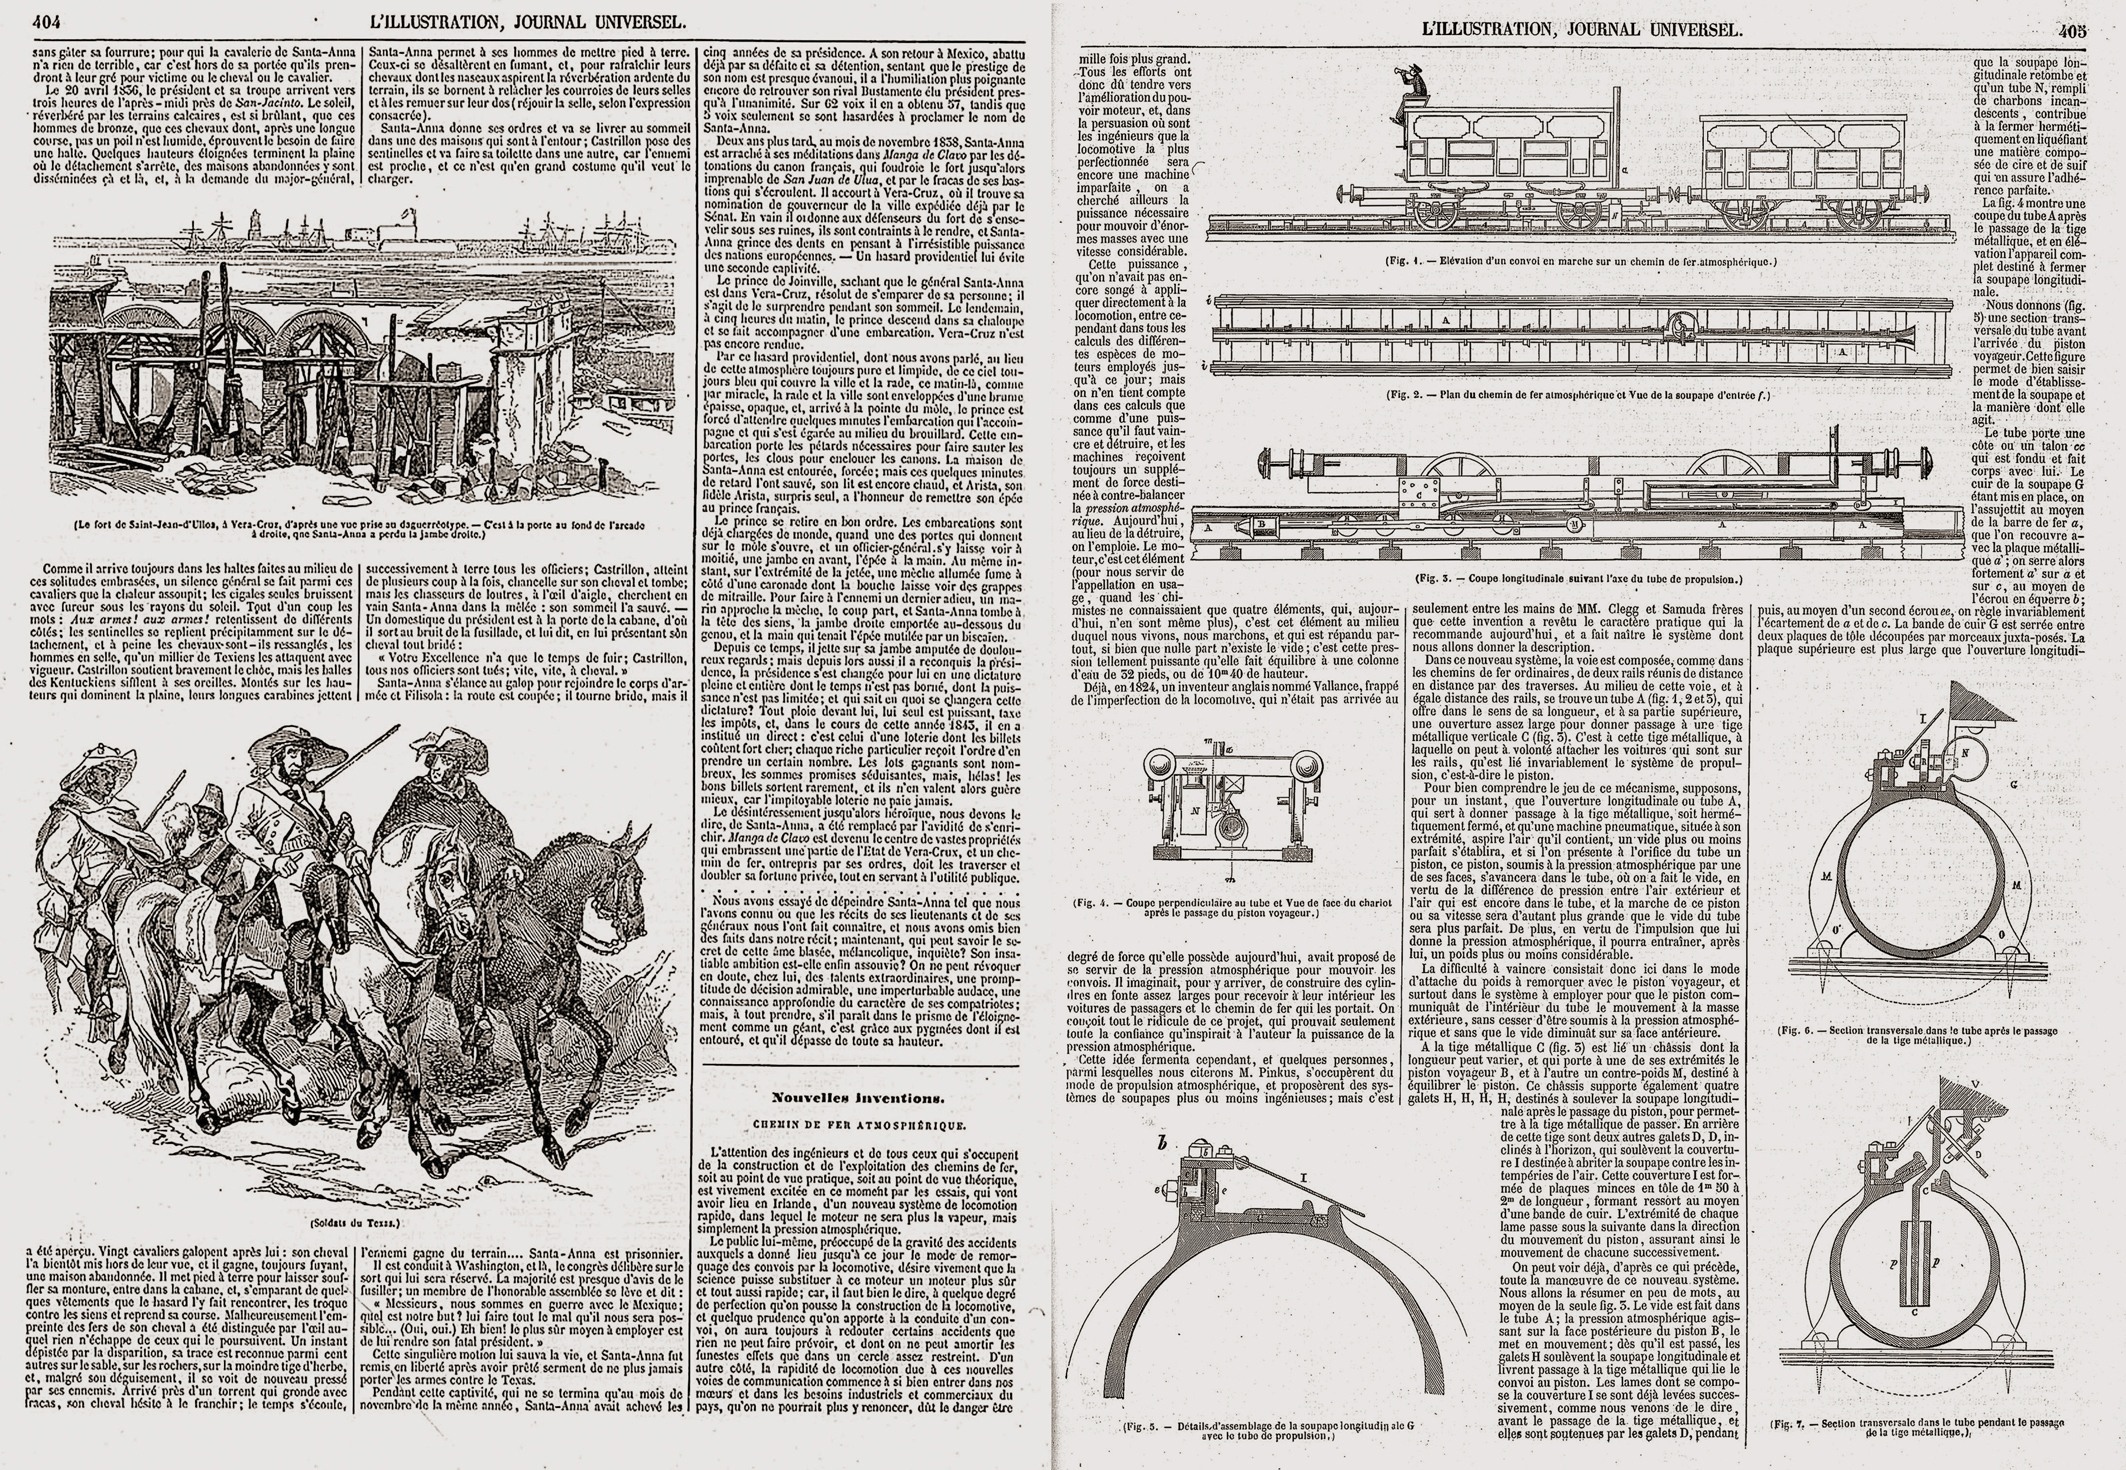 Fig. 1: Auteur inconnu. 1843. «L’Illustration»
Tiré de l’Illustration n° 26, 26 août 1843, p. 404
